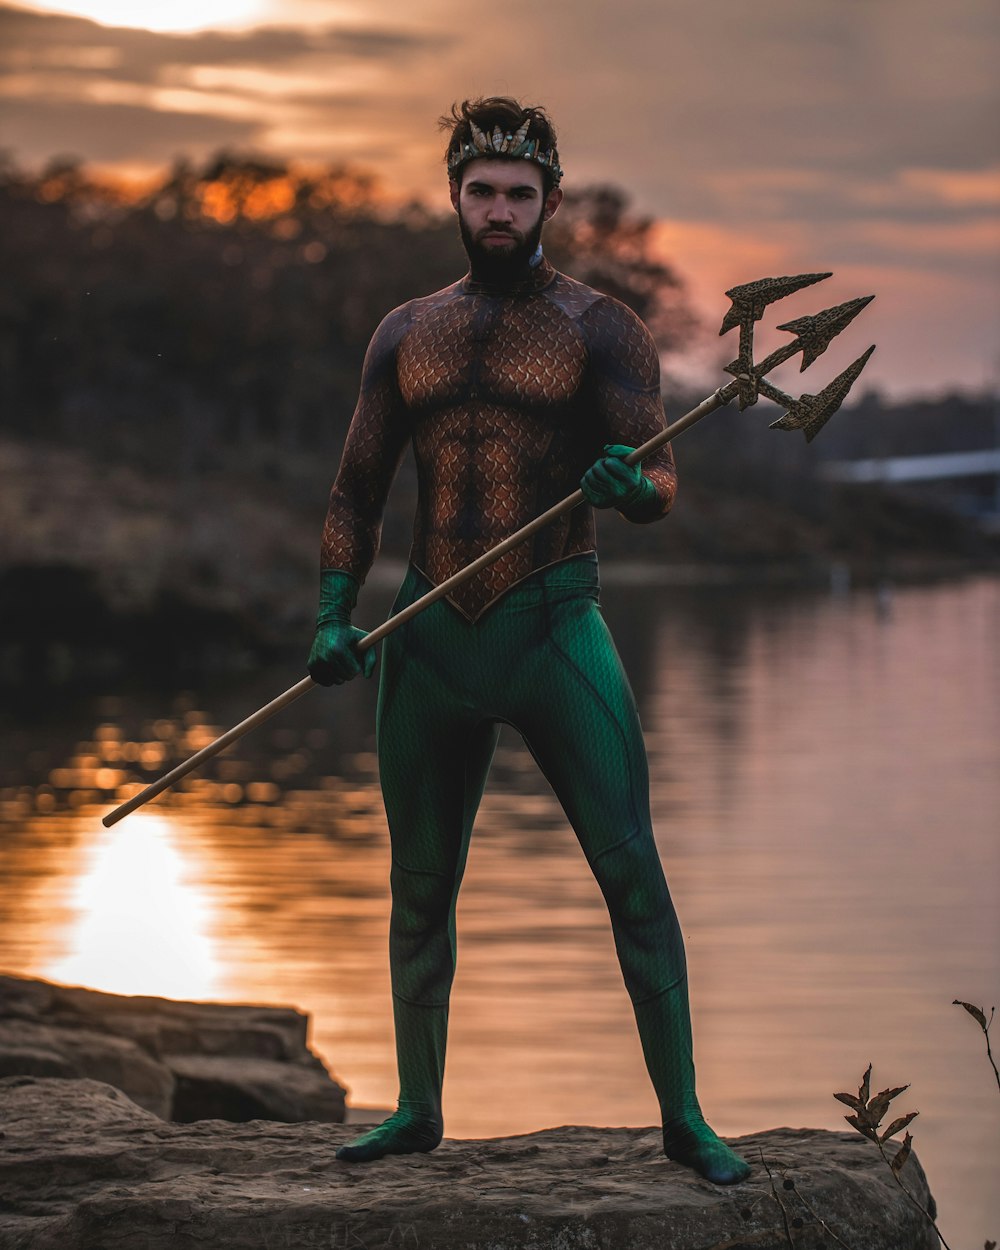 Mann im Poseidon-Kostüm, der auf einem Felsen steht